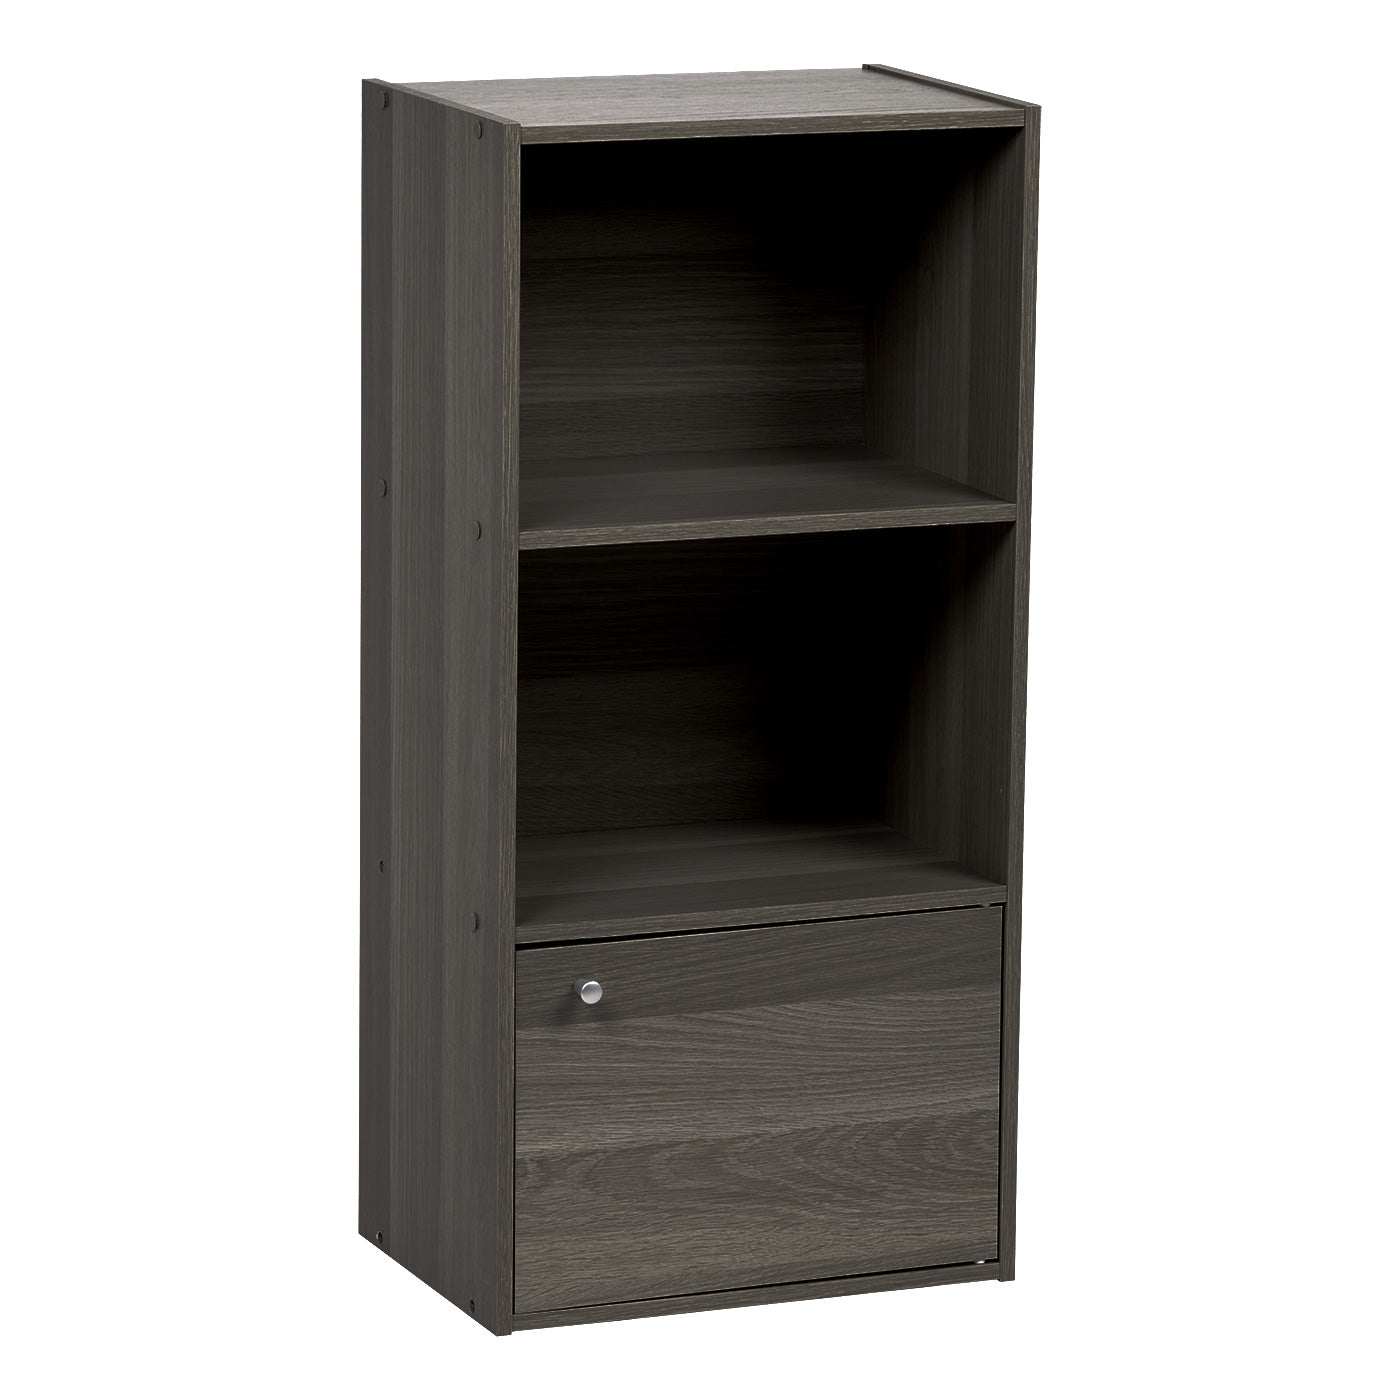 Iris USA 3 Tier Bookshelf and Storage Cupboard, Open Cubby Storage Shelf with Door, Small Storage Cabinet, Grey 1 Door 596365